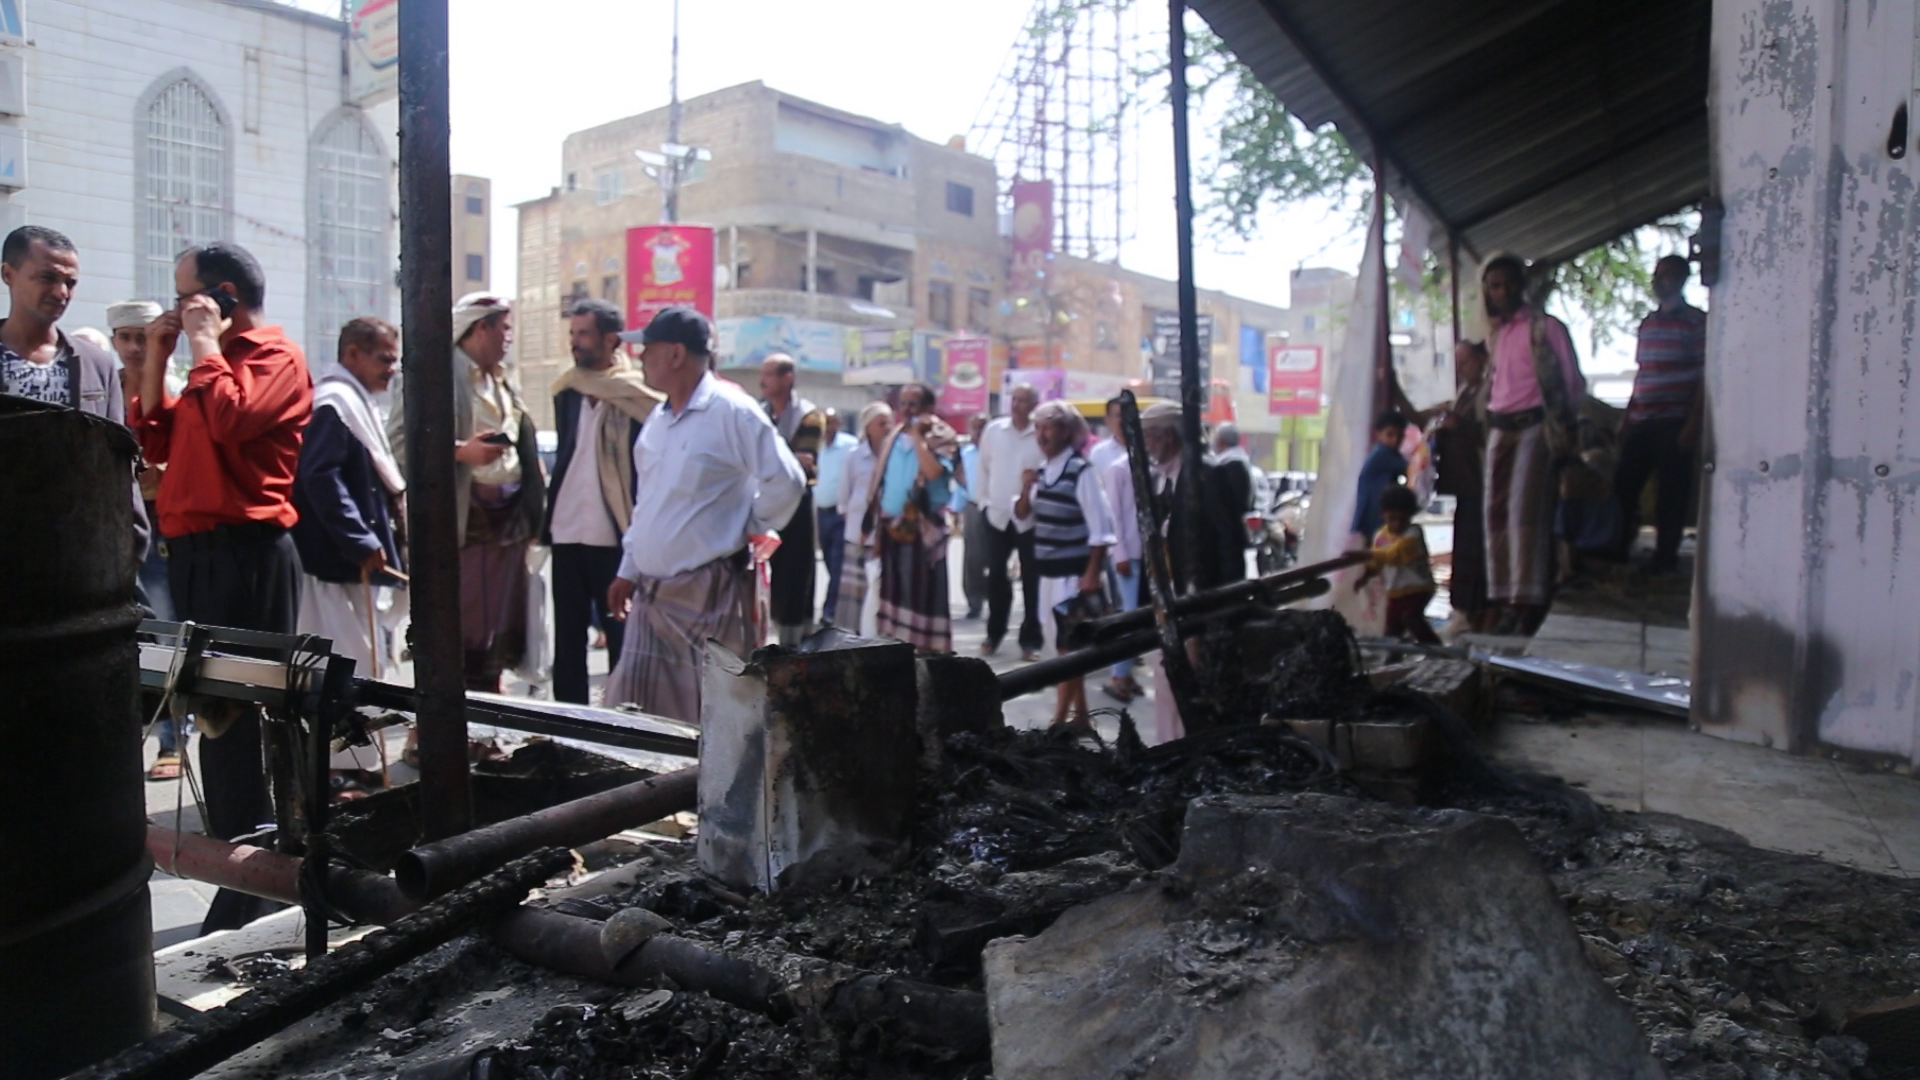 تعز : إحراق ساحة الحقوق والحريات ليلآ وسط منطقة مغلقة عسكريآ